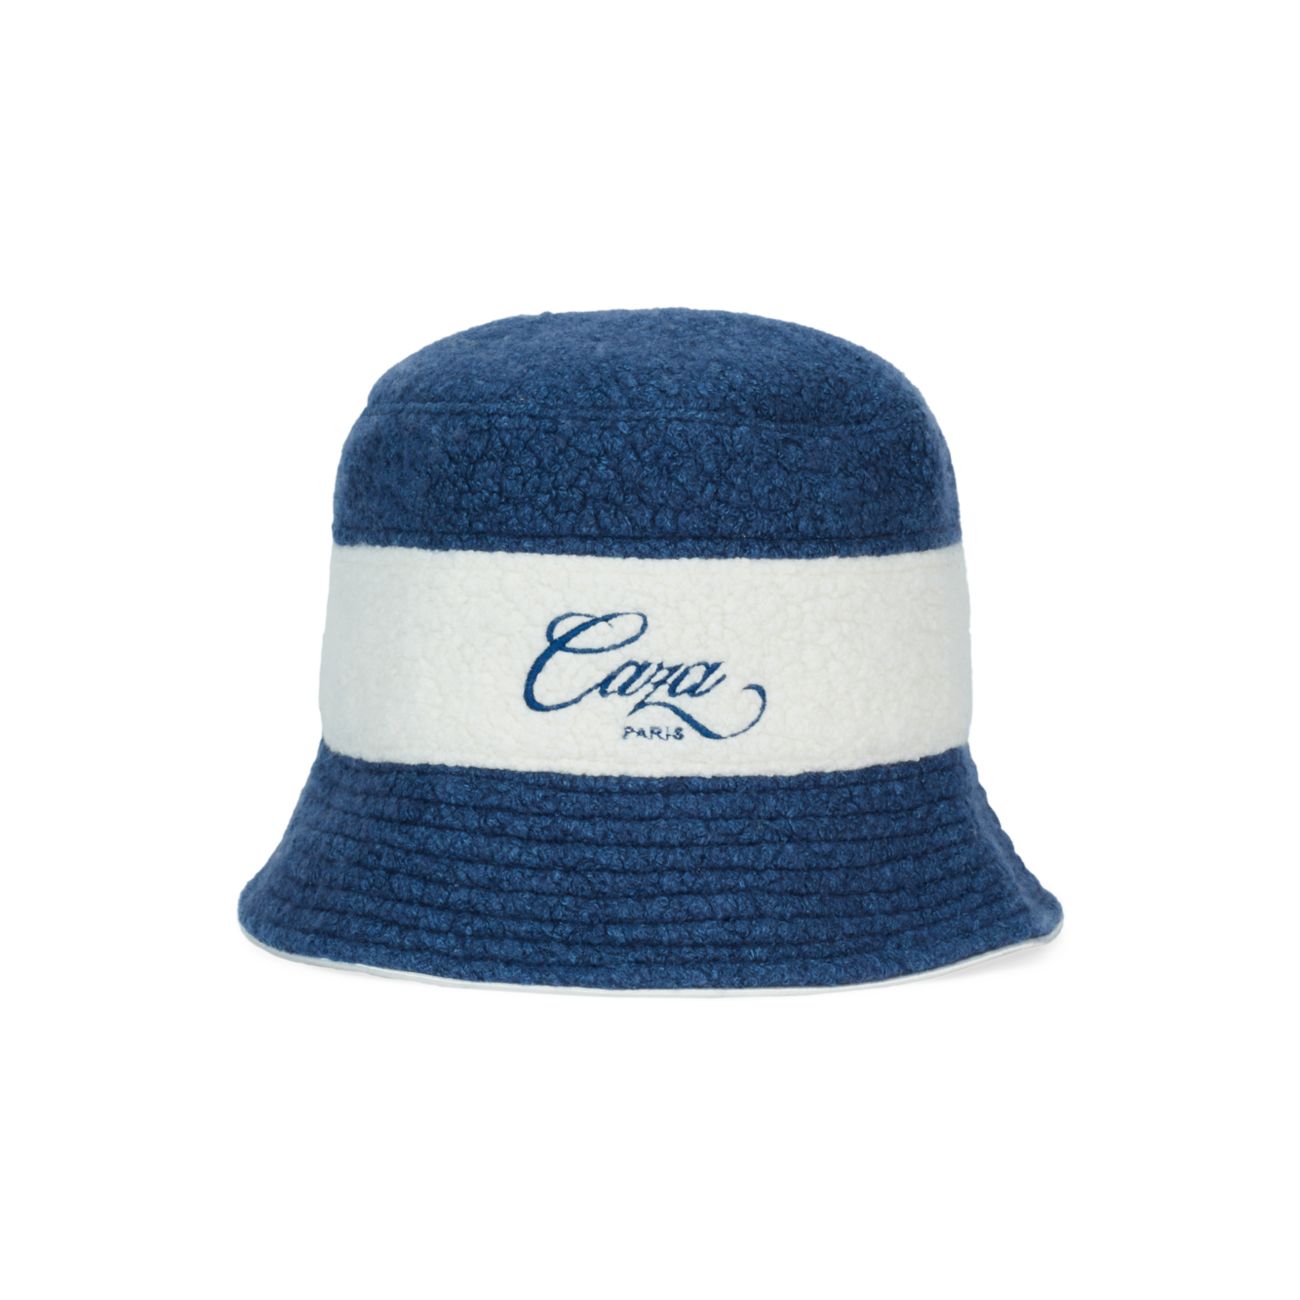 Махровая шляпа-ведро Caza Paris Casablanca